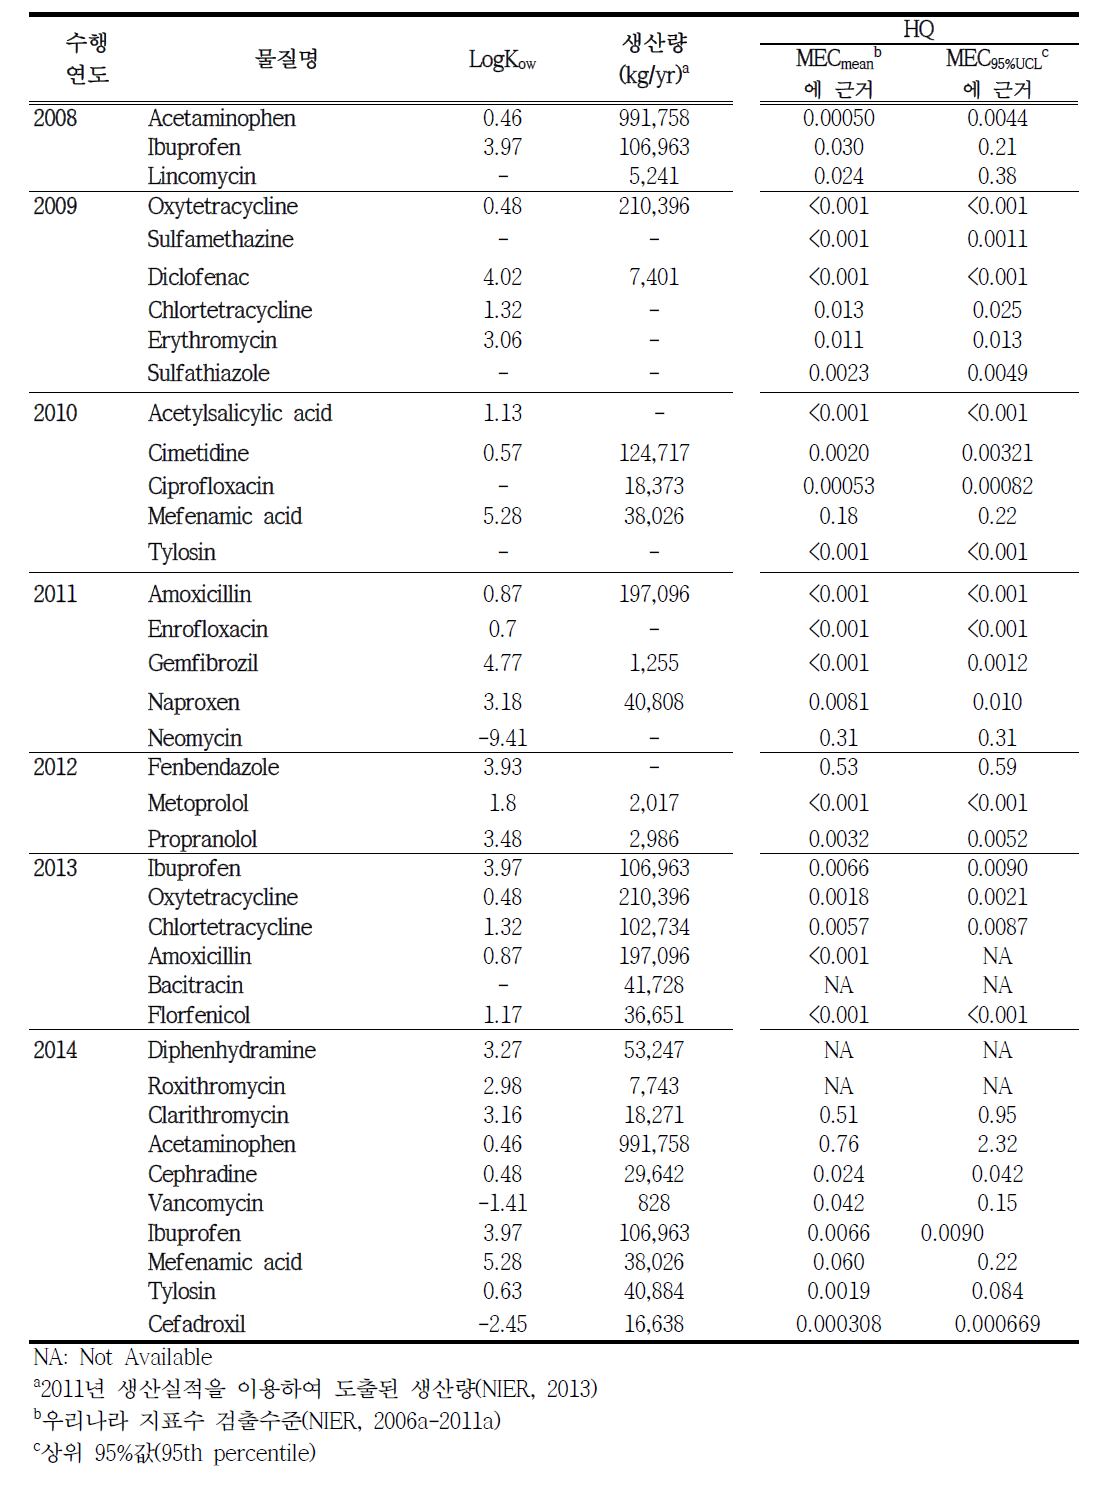 2008-2014년에 수행한 잔류 의약물질의 환경위해성평가 사업 결과 요약